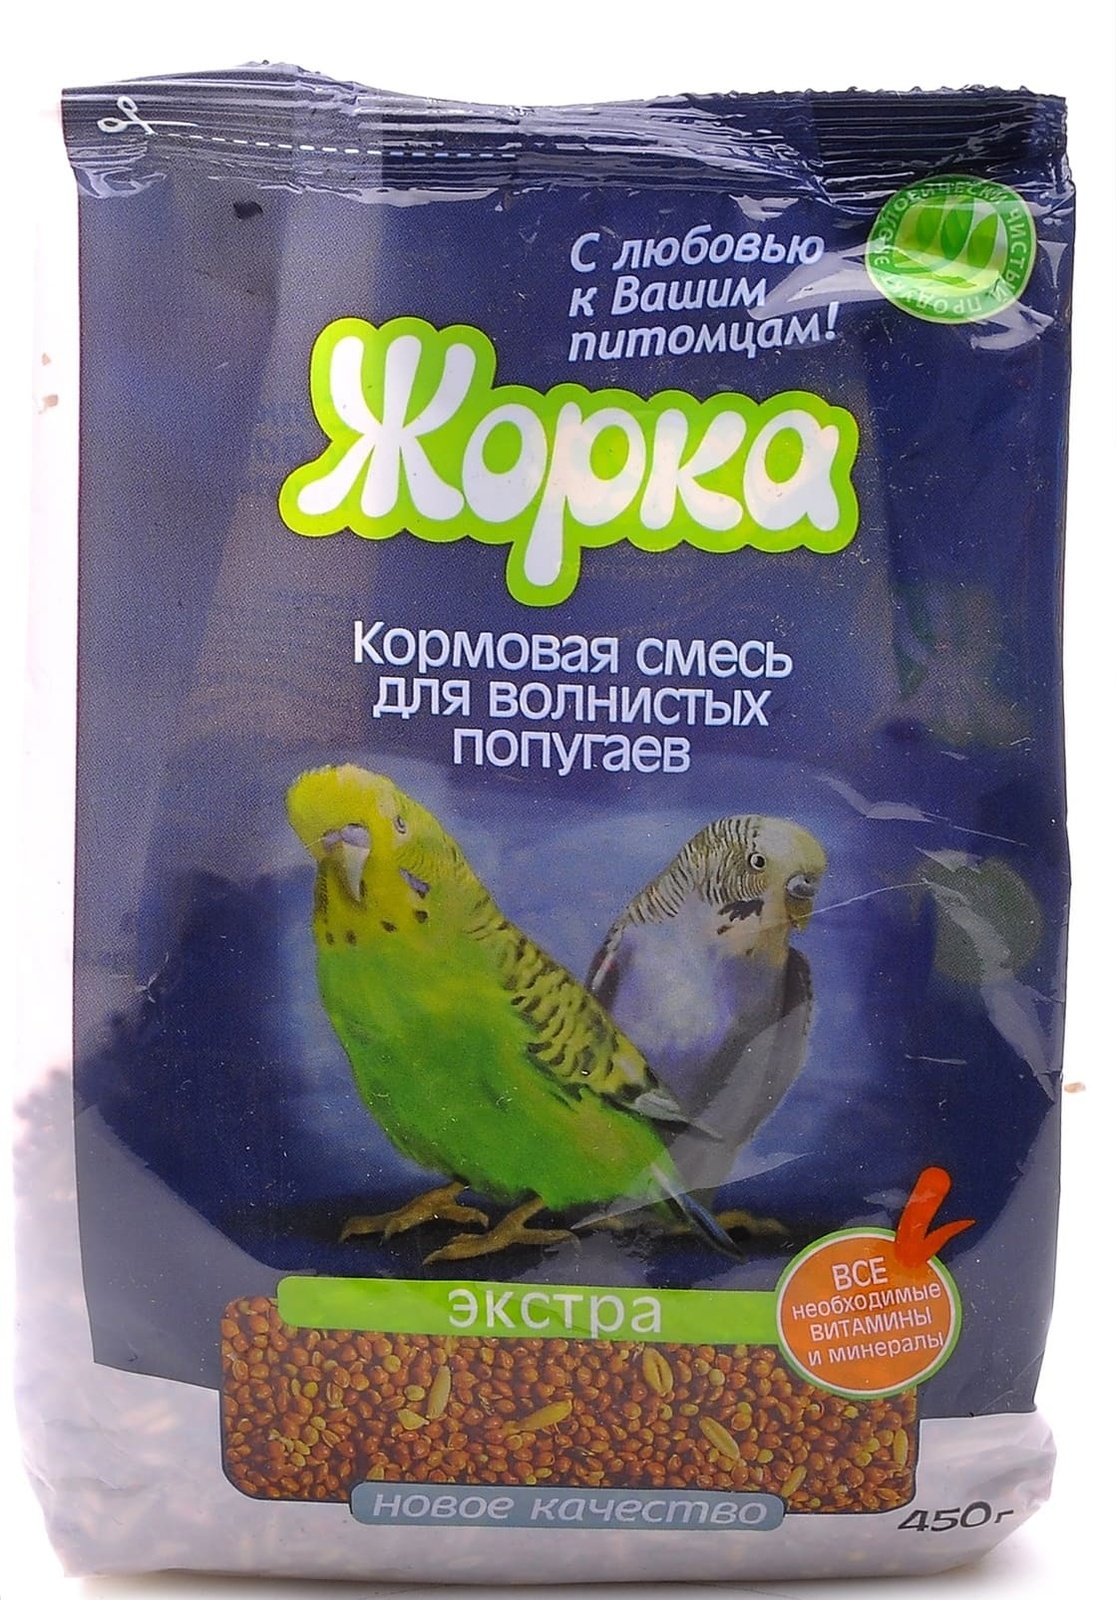 Жорка Жорка lux для волнистых попугаев Экстра (пакет) (450 г)